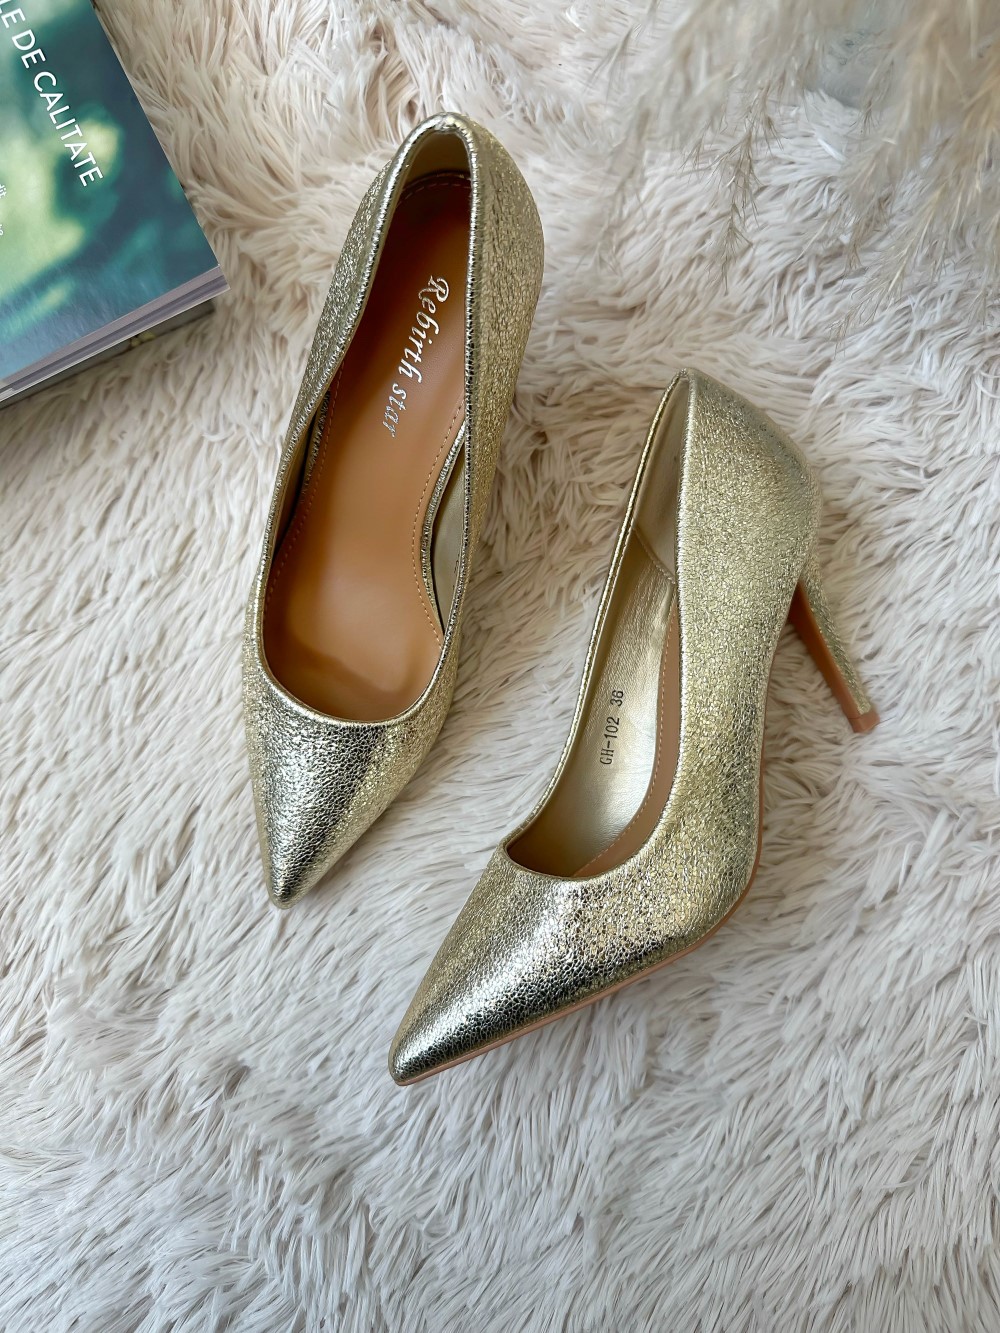 Pantofi eleganti dama cu toc subtire aurii 102